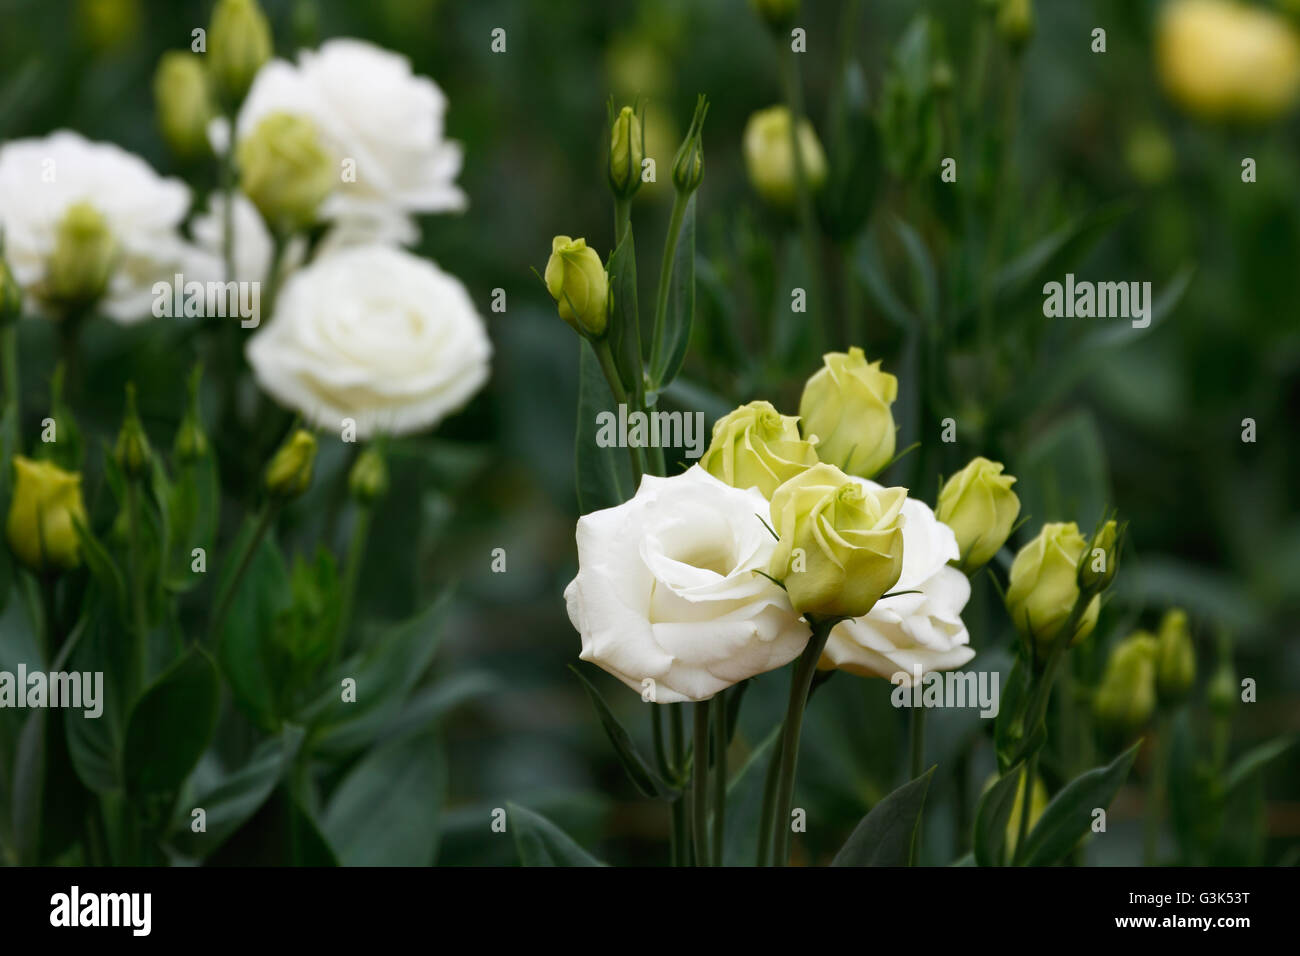 / Lisianthus Eustoma flores (Rosa Blanca) la planta que se asemejan a una rosa blanca pero sin espinas Foto de stock